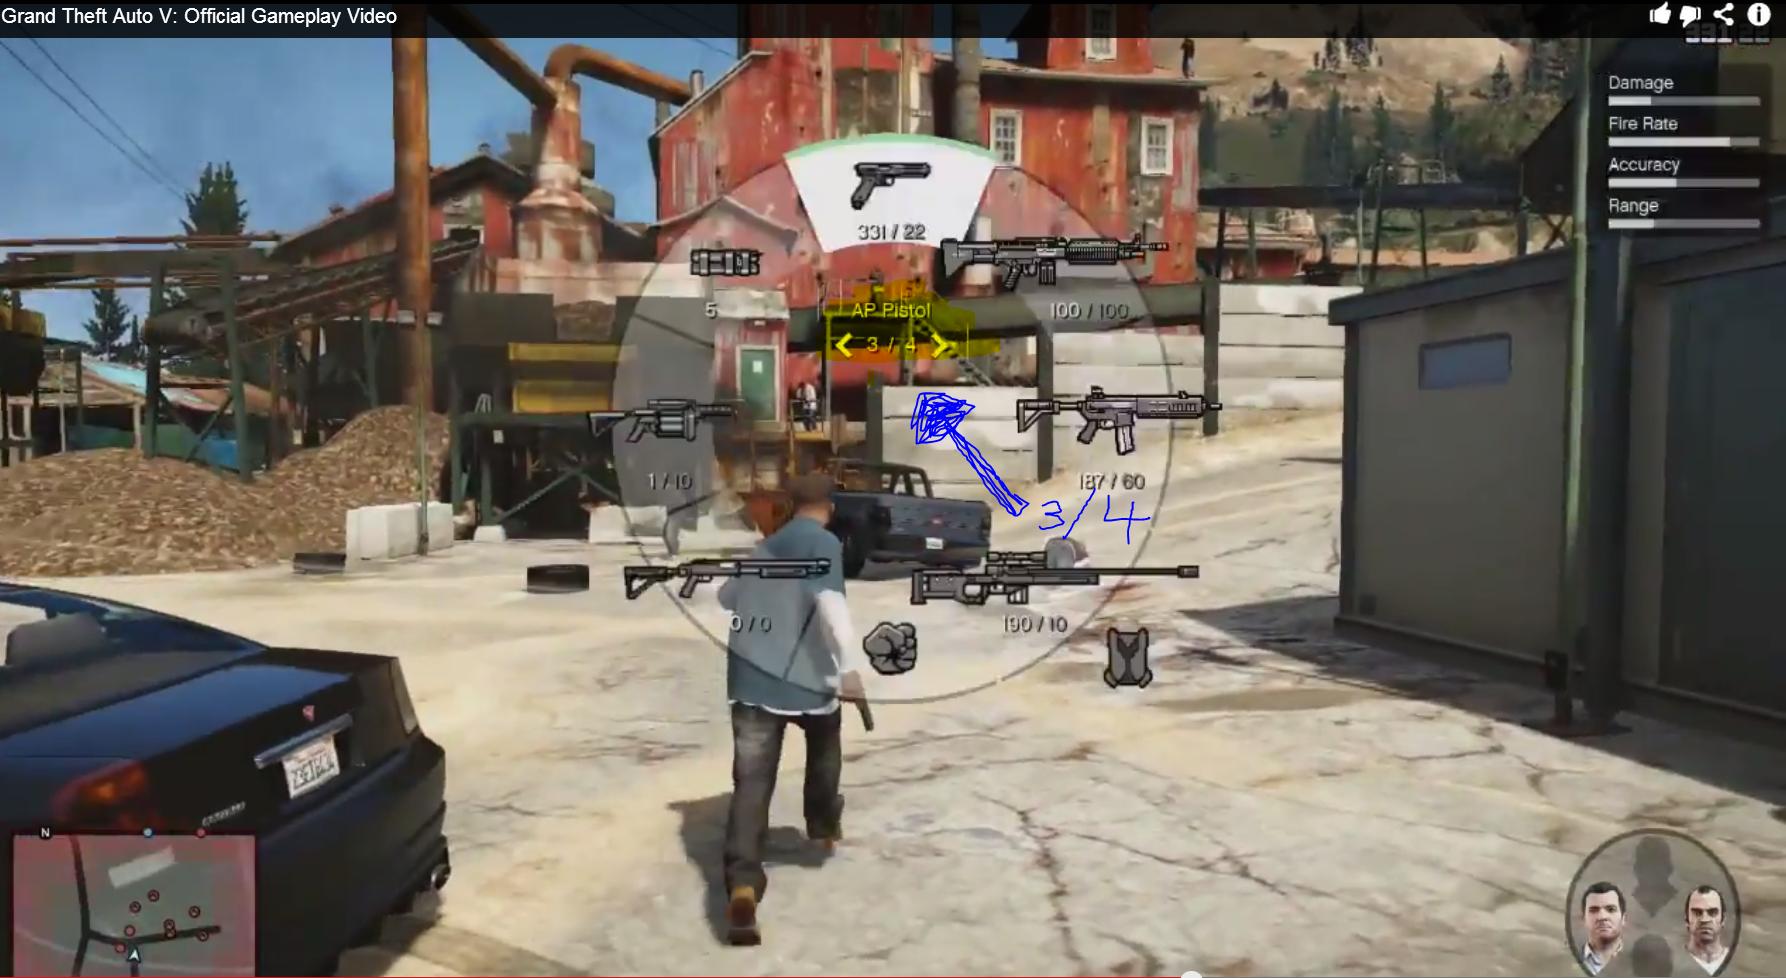 nV9xYDo این گروه خشن | تحلیل و بررسی اولین نمایش گیم پلی Grand Theft Auto V